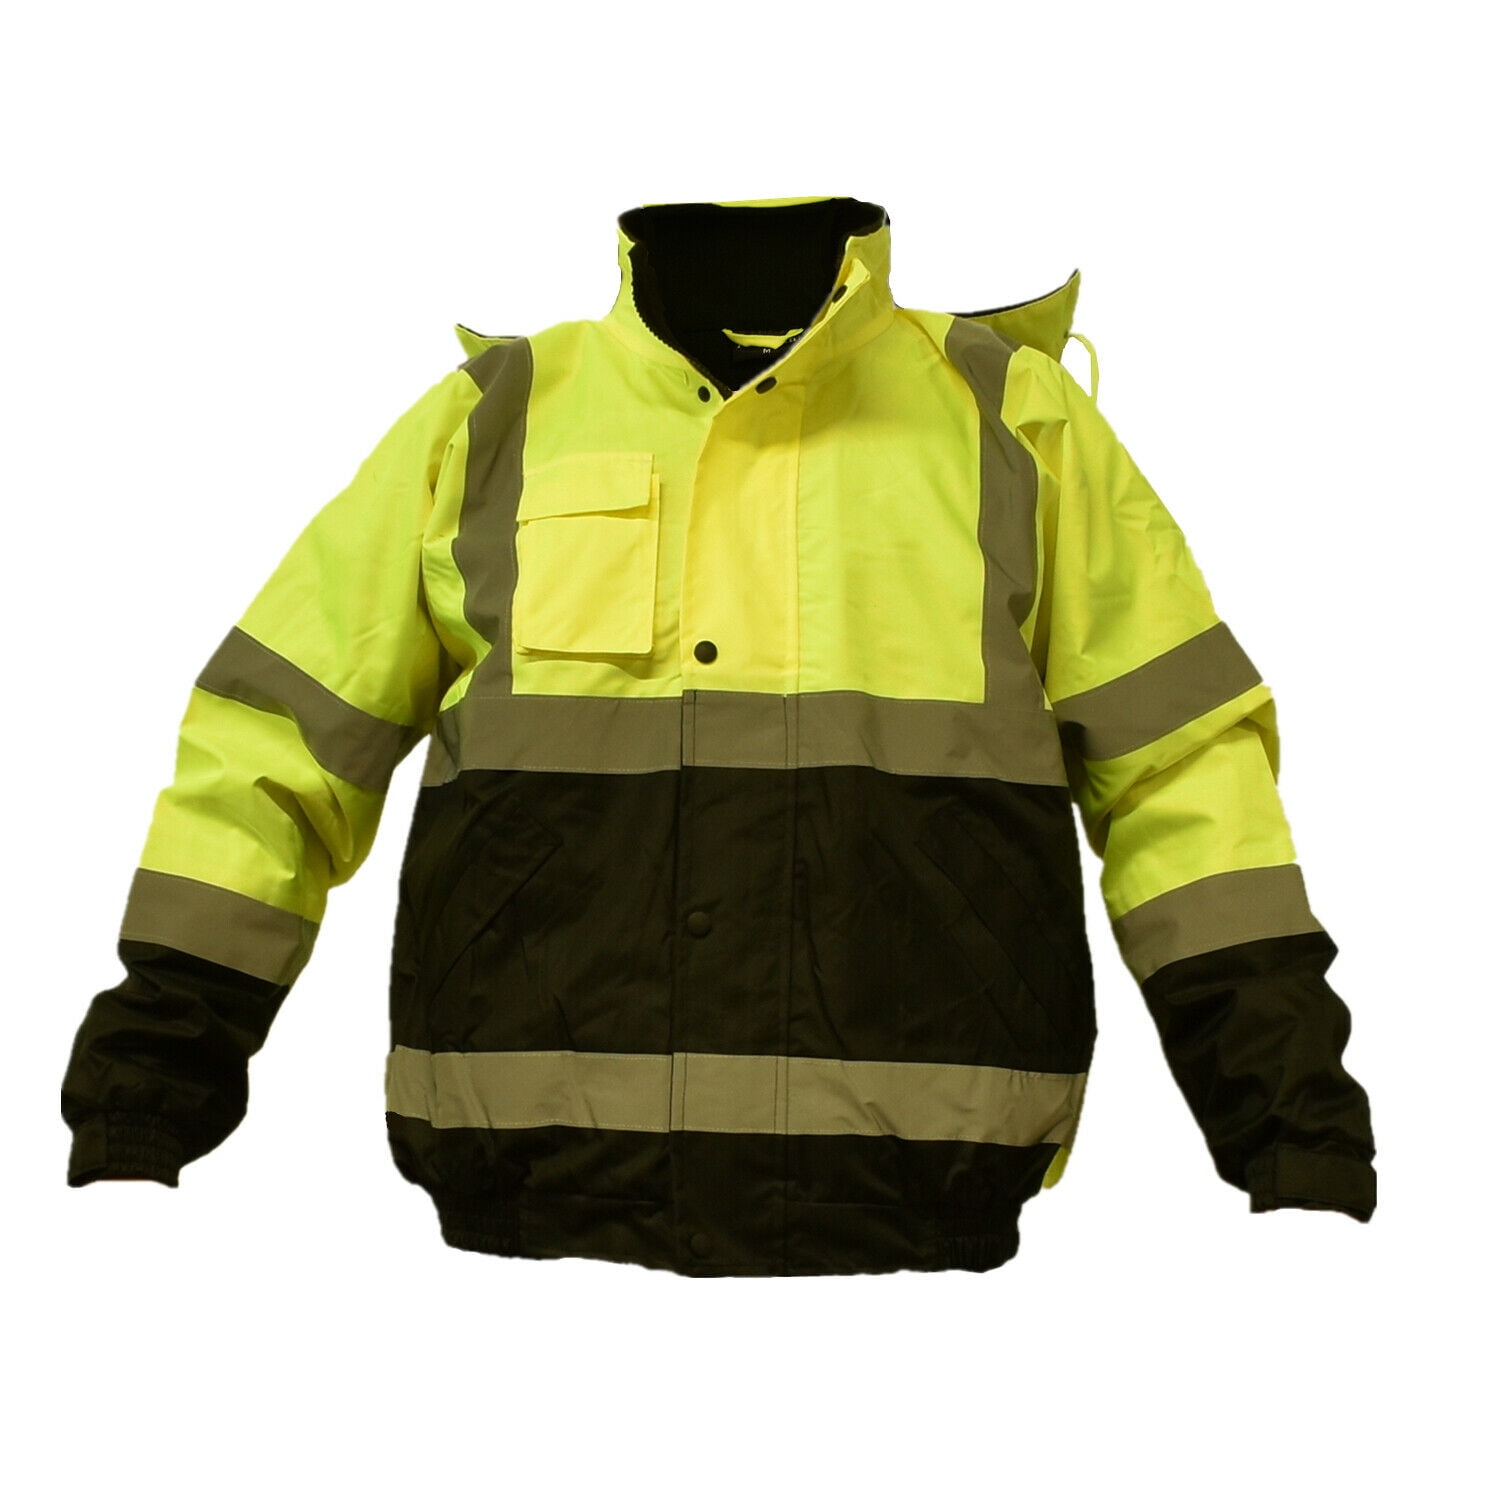 Pro Trade Waterproof Quality High Visibility Bomber Jacket Padded Coat Hi Viz 